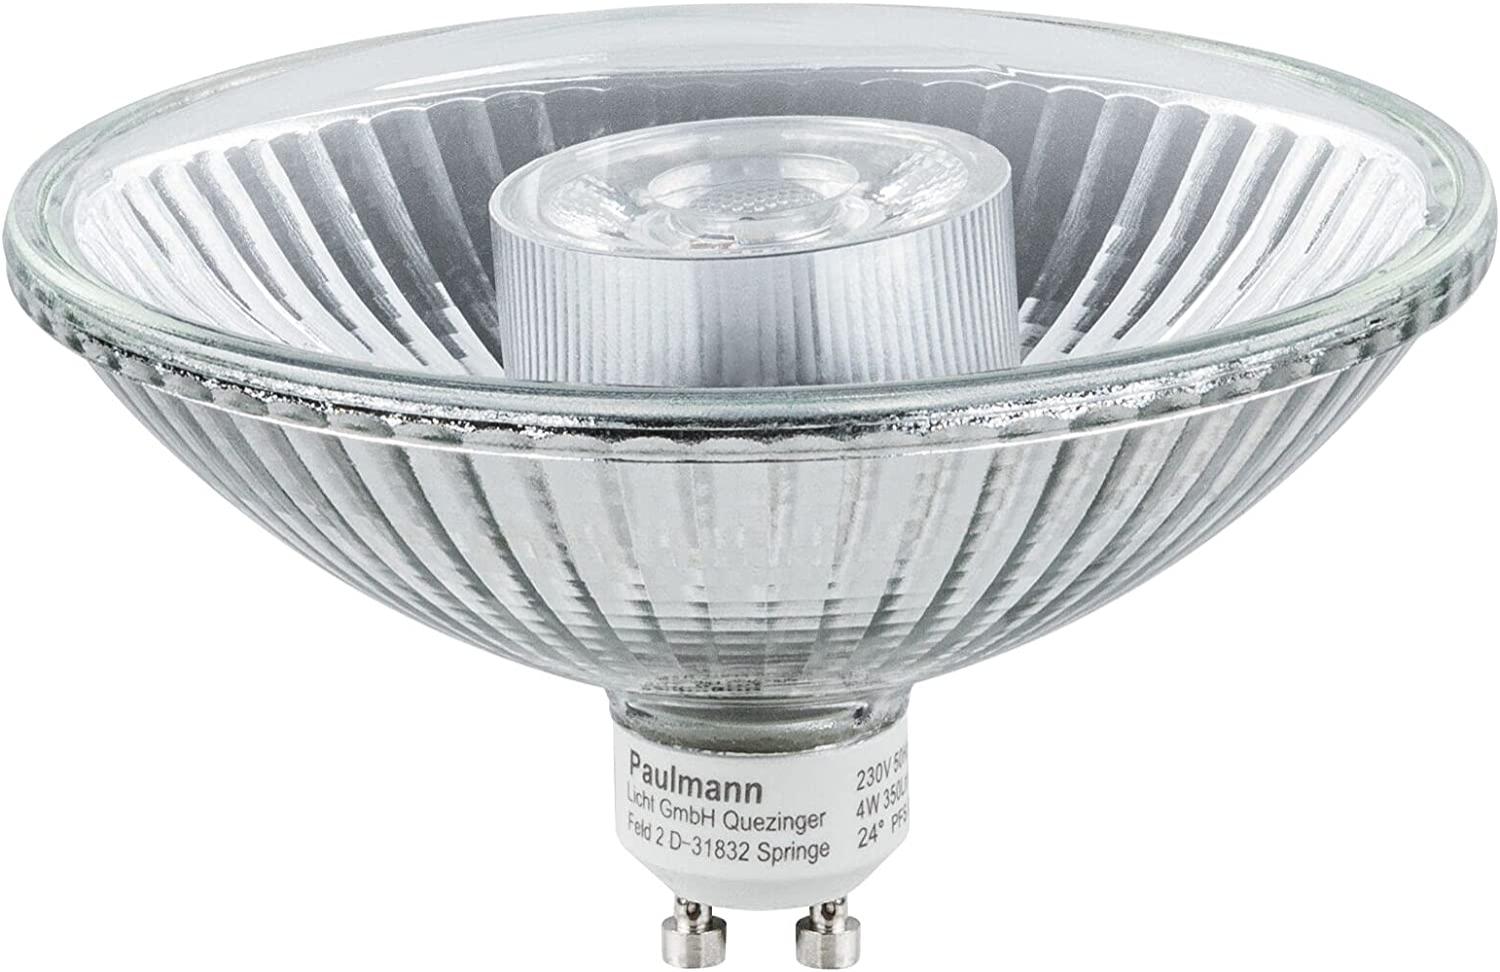 Paulmann 285. 14 LED Reflektor QPAR111 4W GU10 24° Warmweiß Bild 1